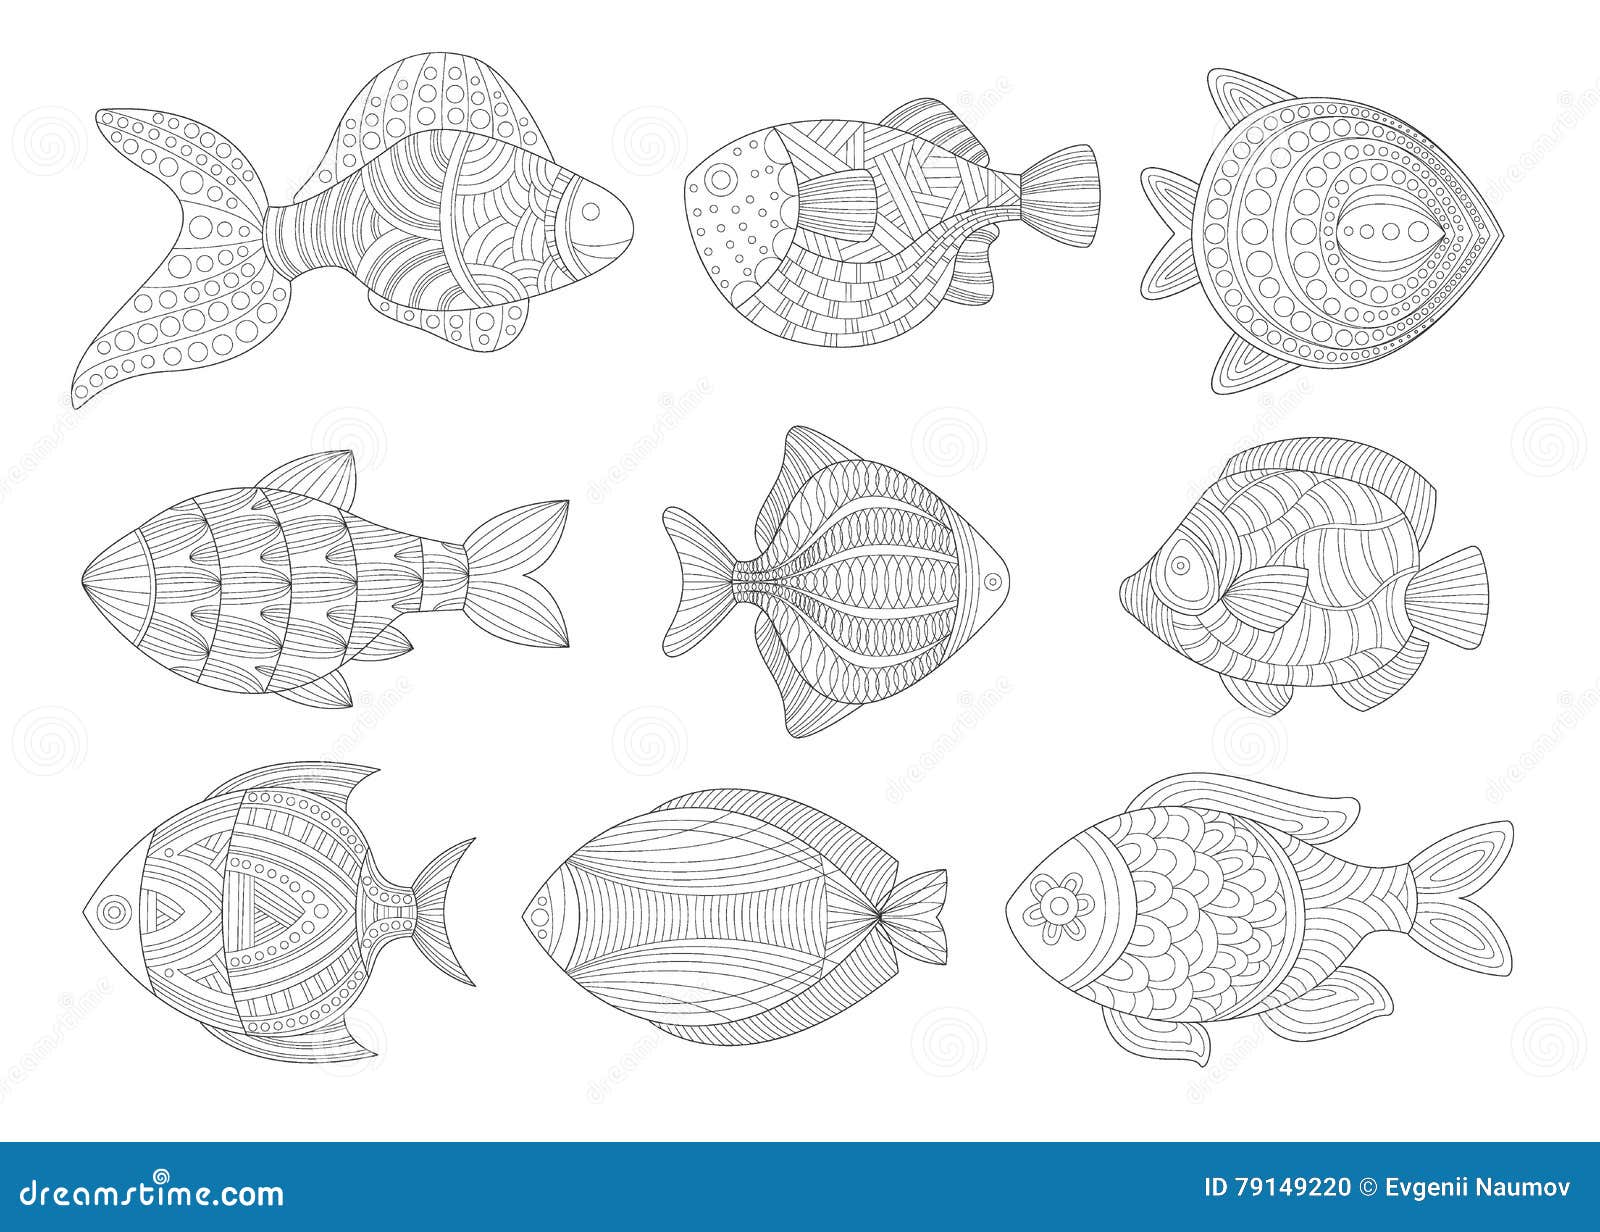 Illustrazione di libro da colorare adulta stabilita di Zentangle del pesce tropicale